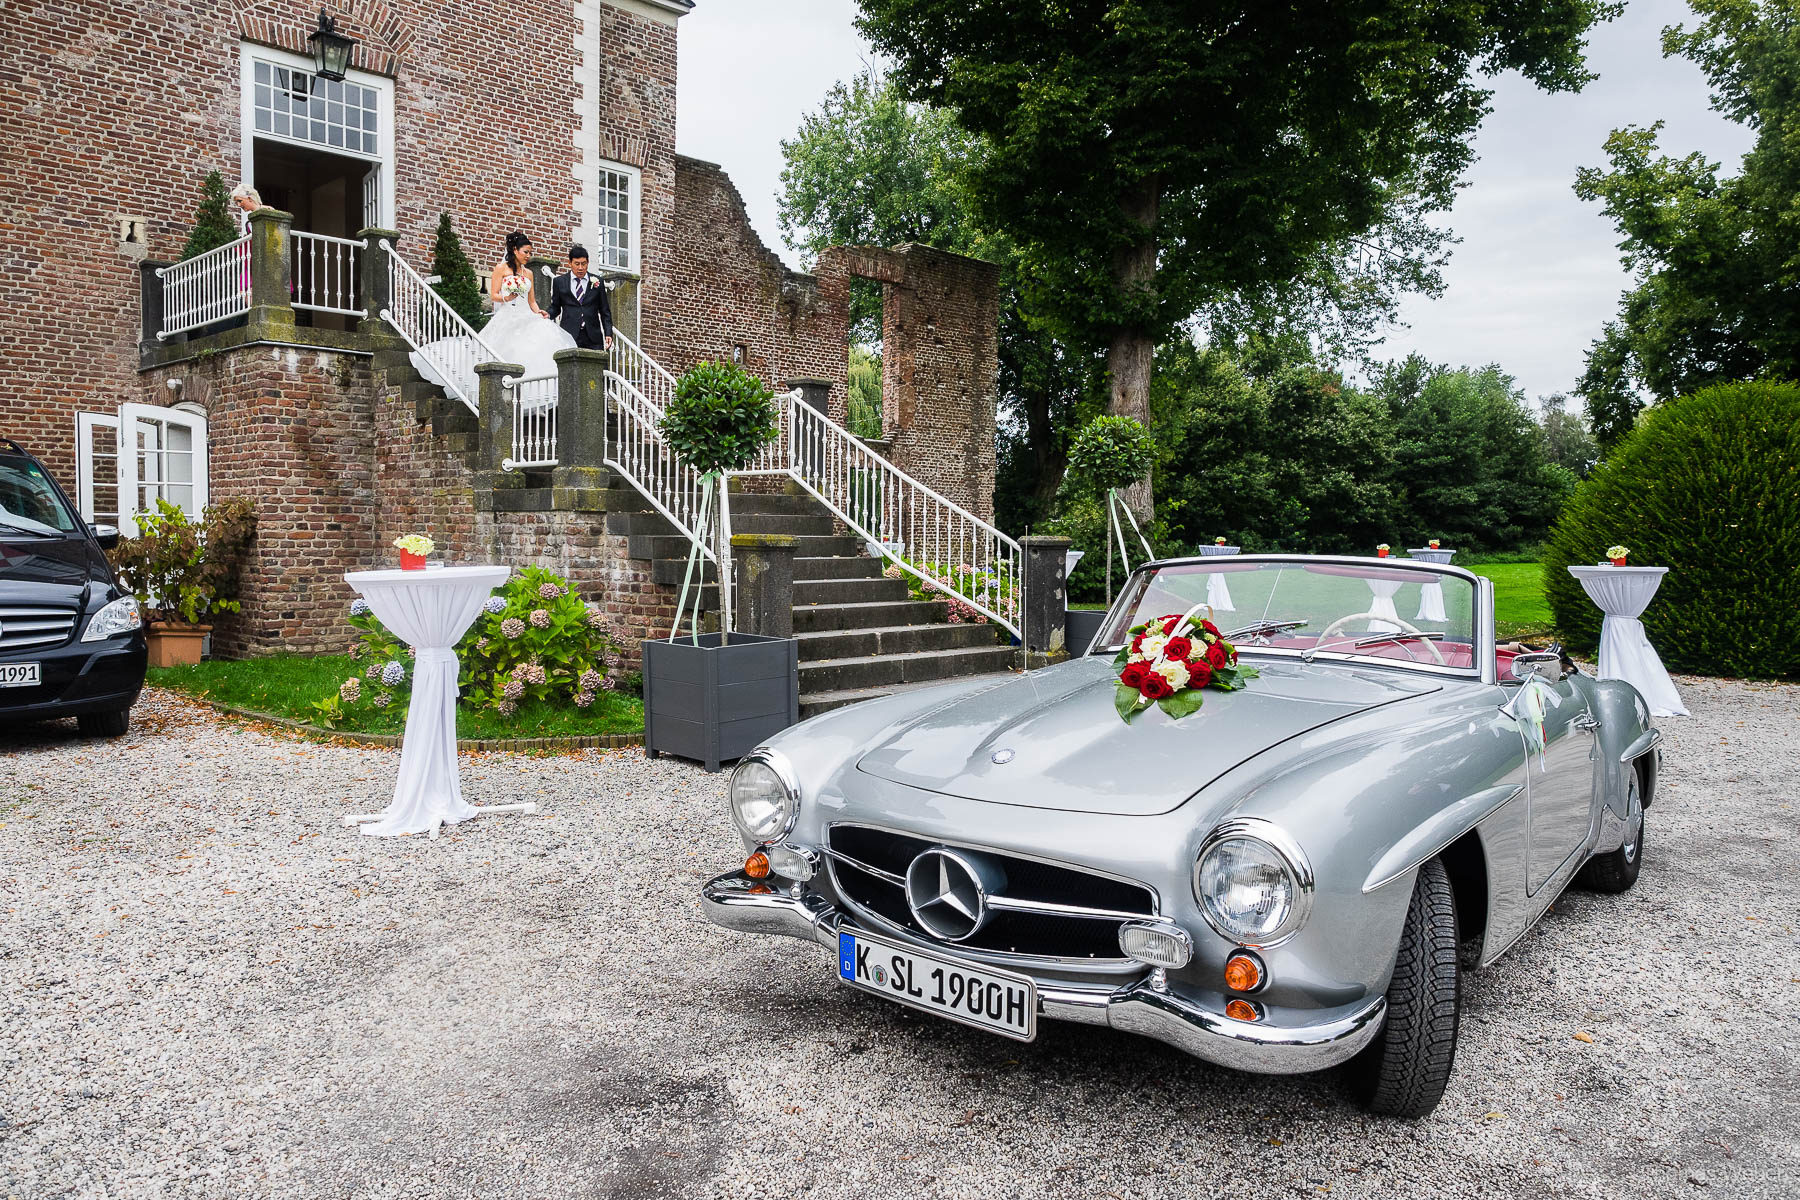 Hochzeitsreportage einer Schlosshochzeit auf der Schlossruine Hertefeld in Weeze, Hochzeitsfotograf Ostfriesland